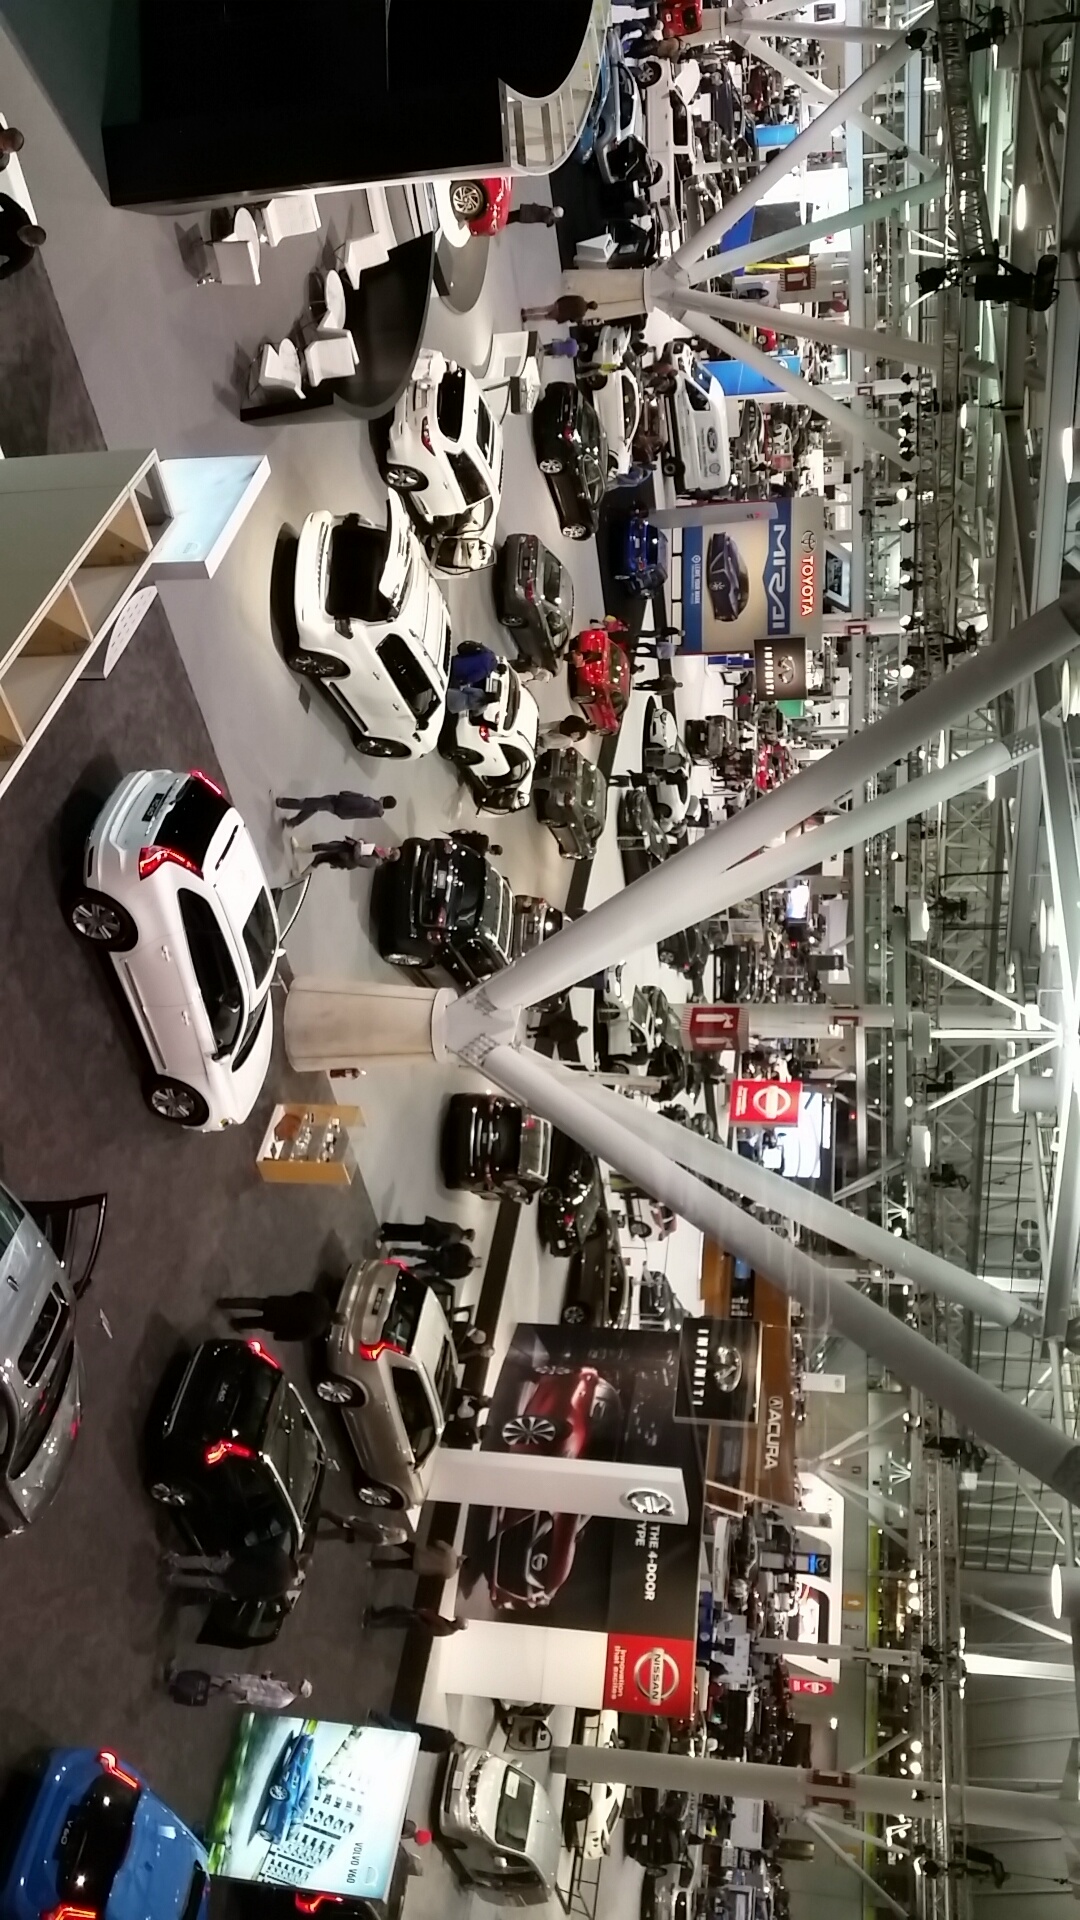 The Boston Auto Show 2016